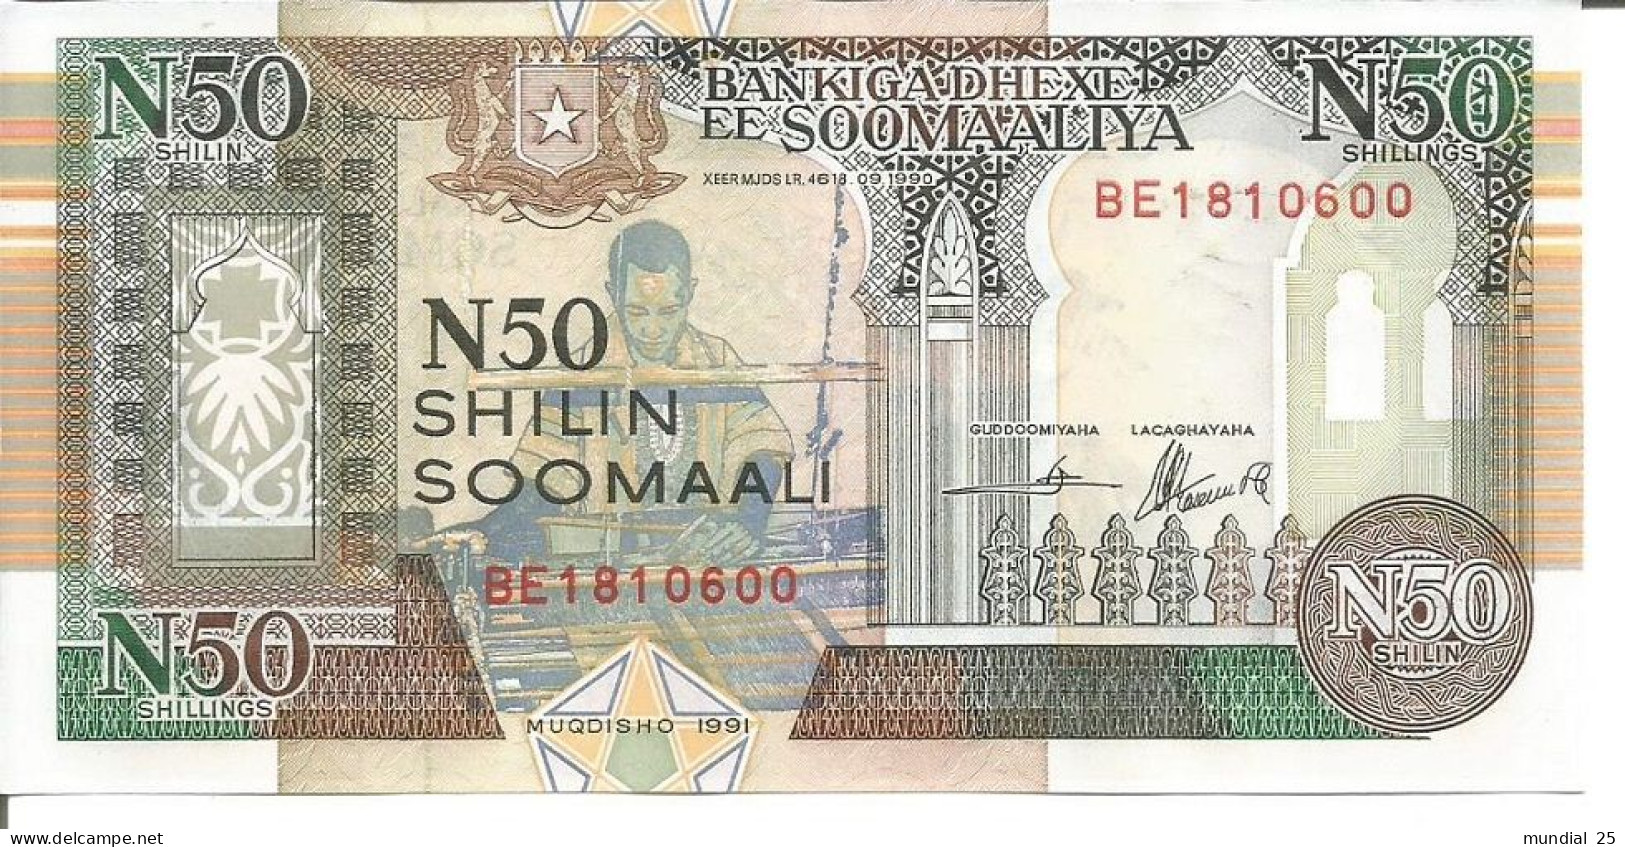 2 SOMALIA NOTES 50 SHILLINGS 1991 - Somalië